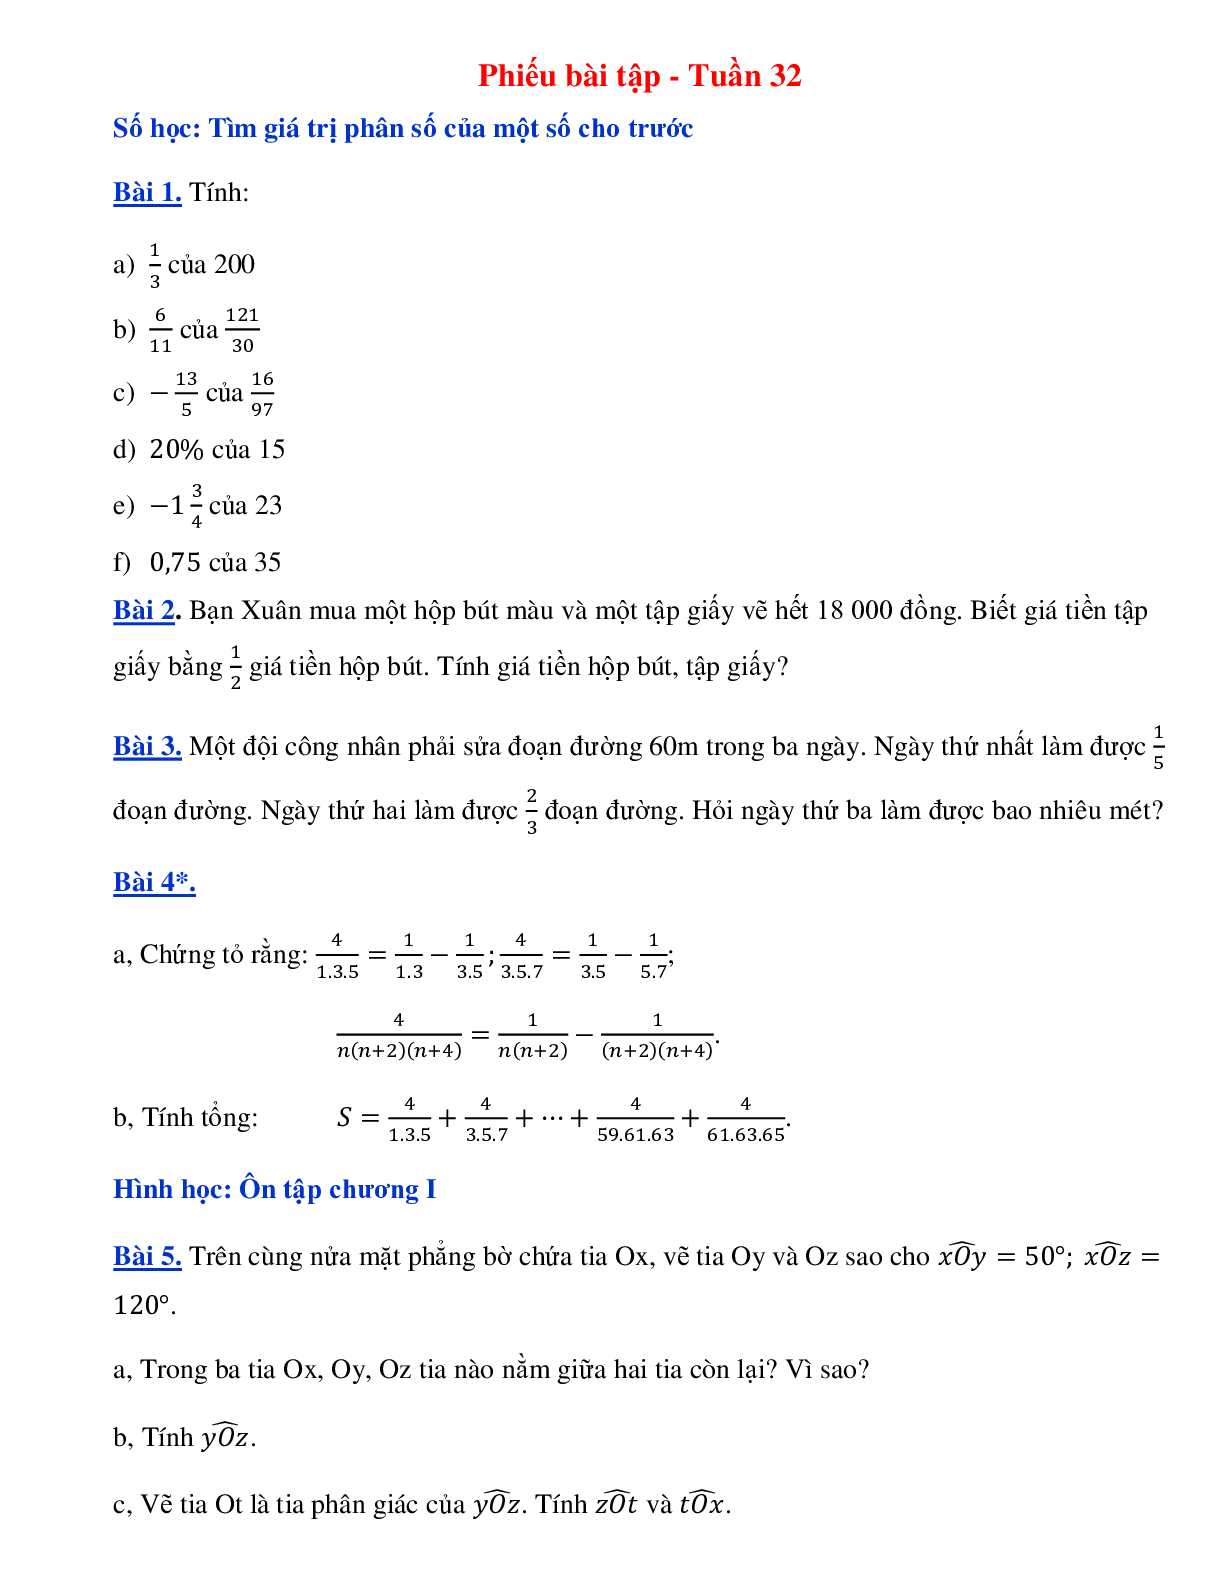 Phiếu bài tập tuần 32 - Toán 6 (trang 1)